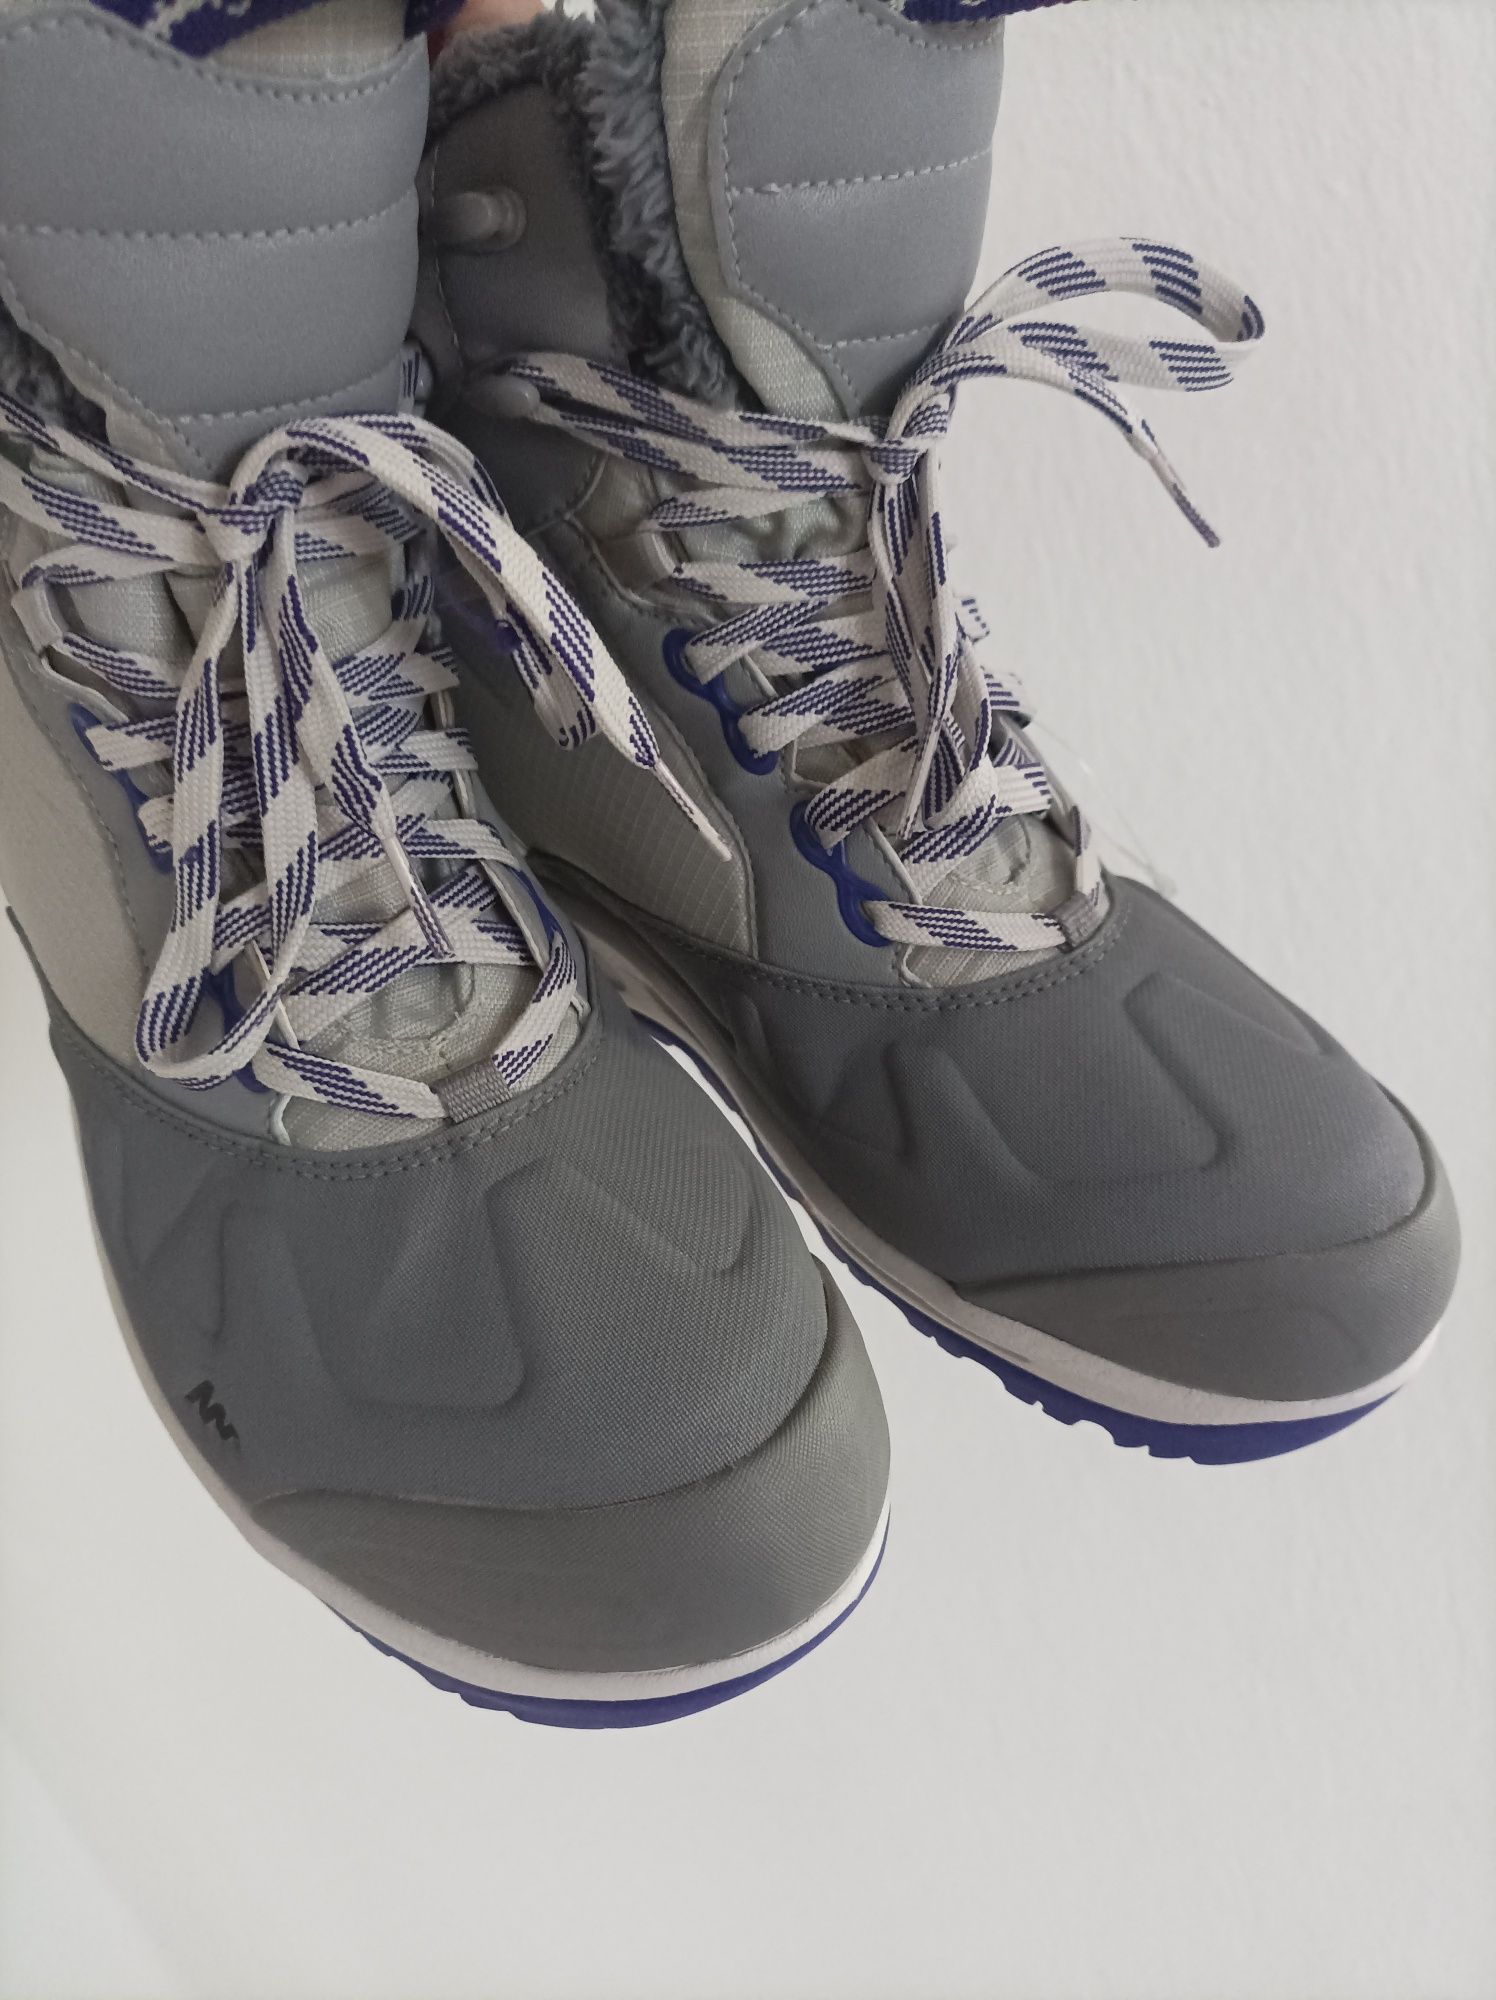 Новые термо сапоги ботинки Quechua 26 см